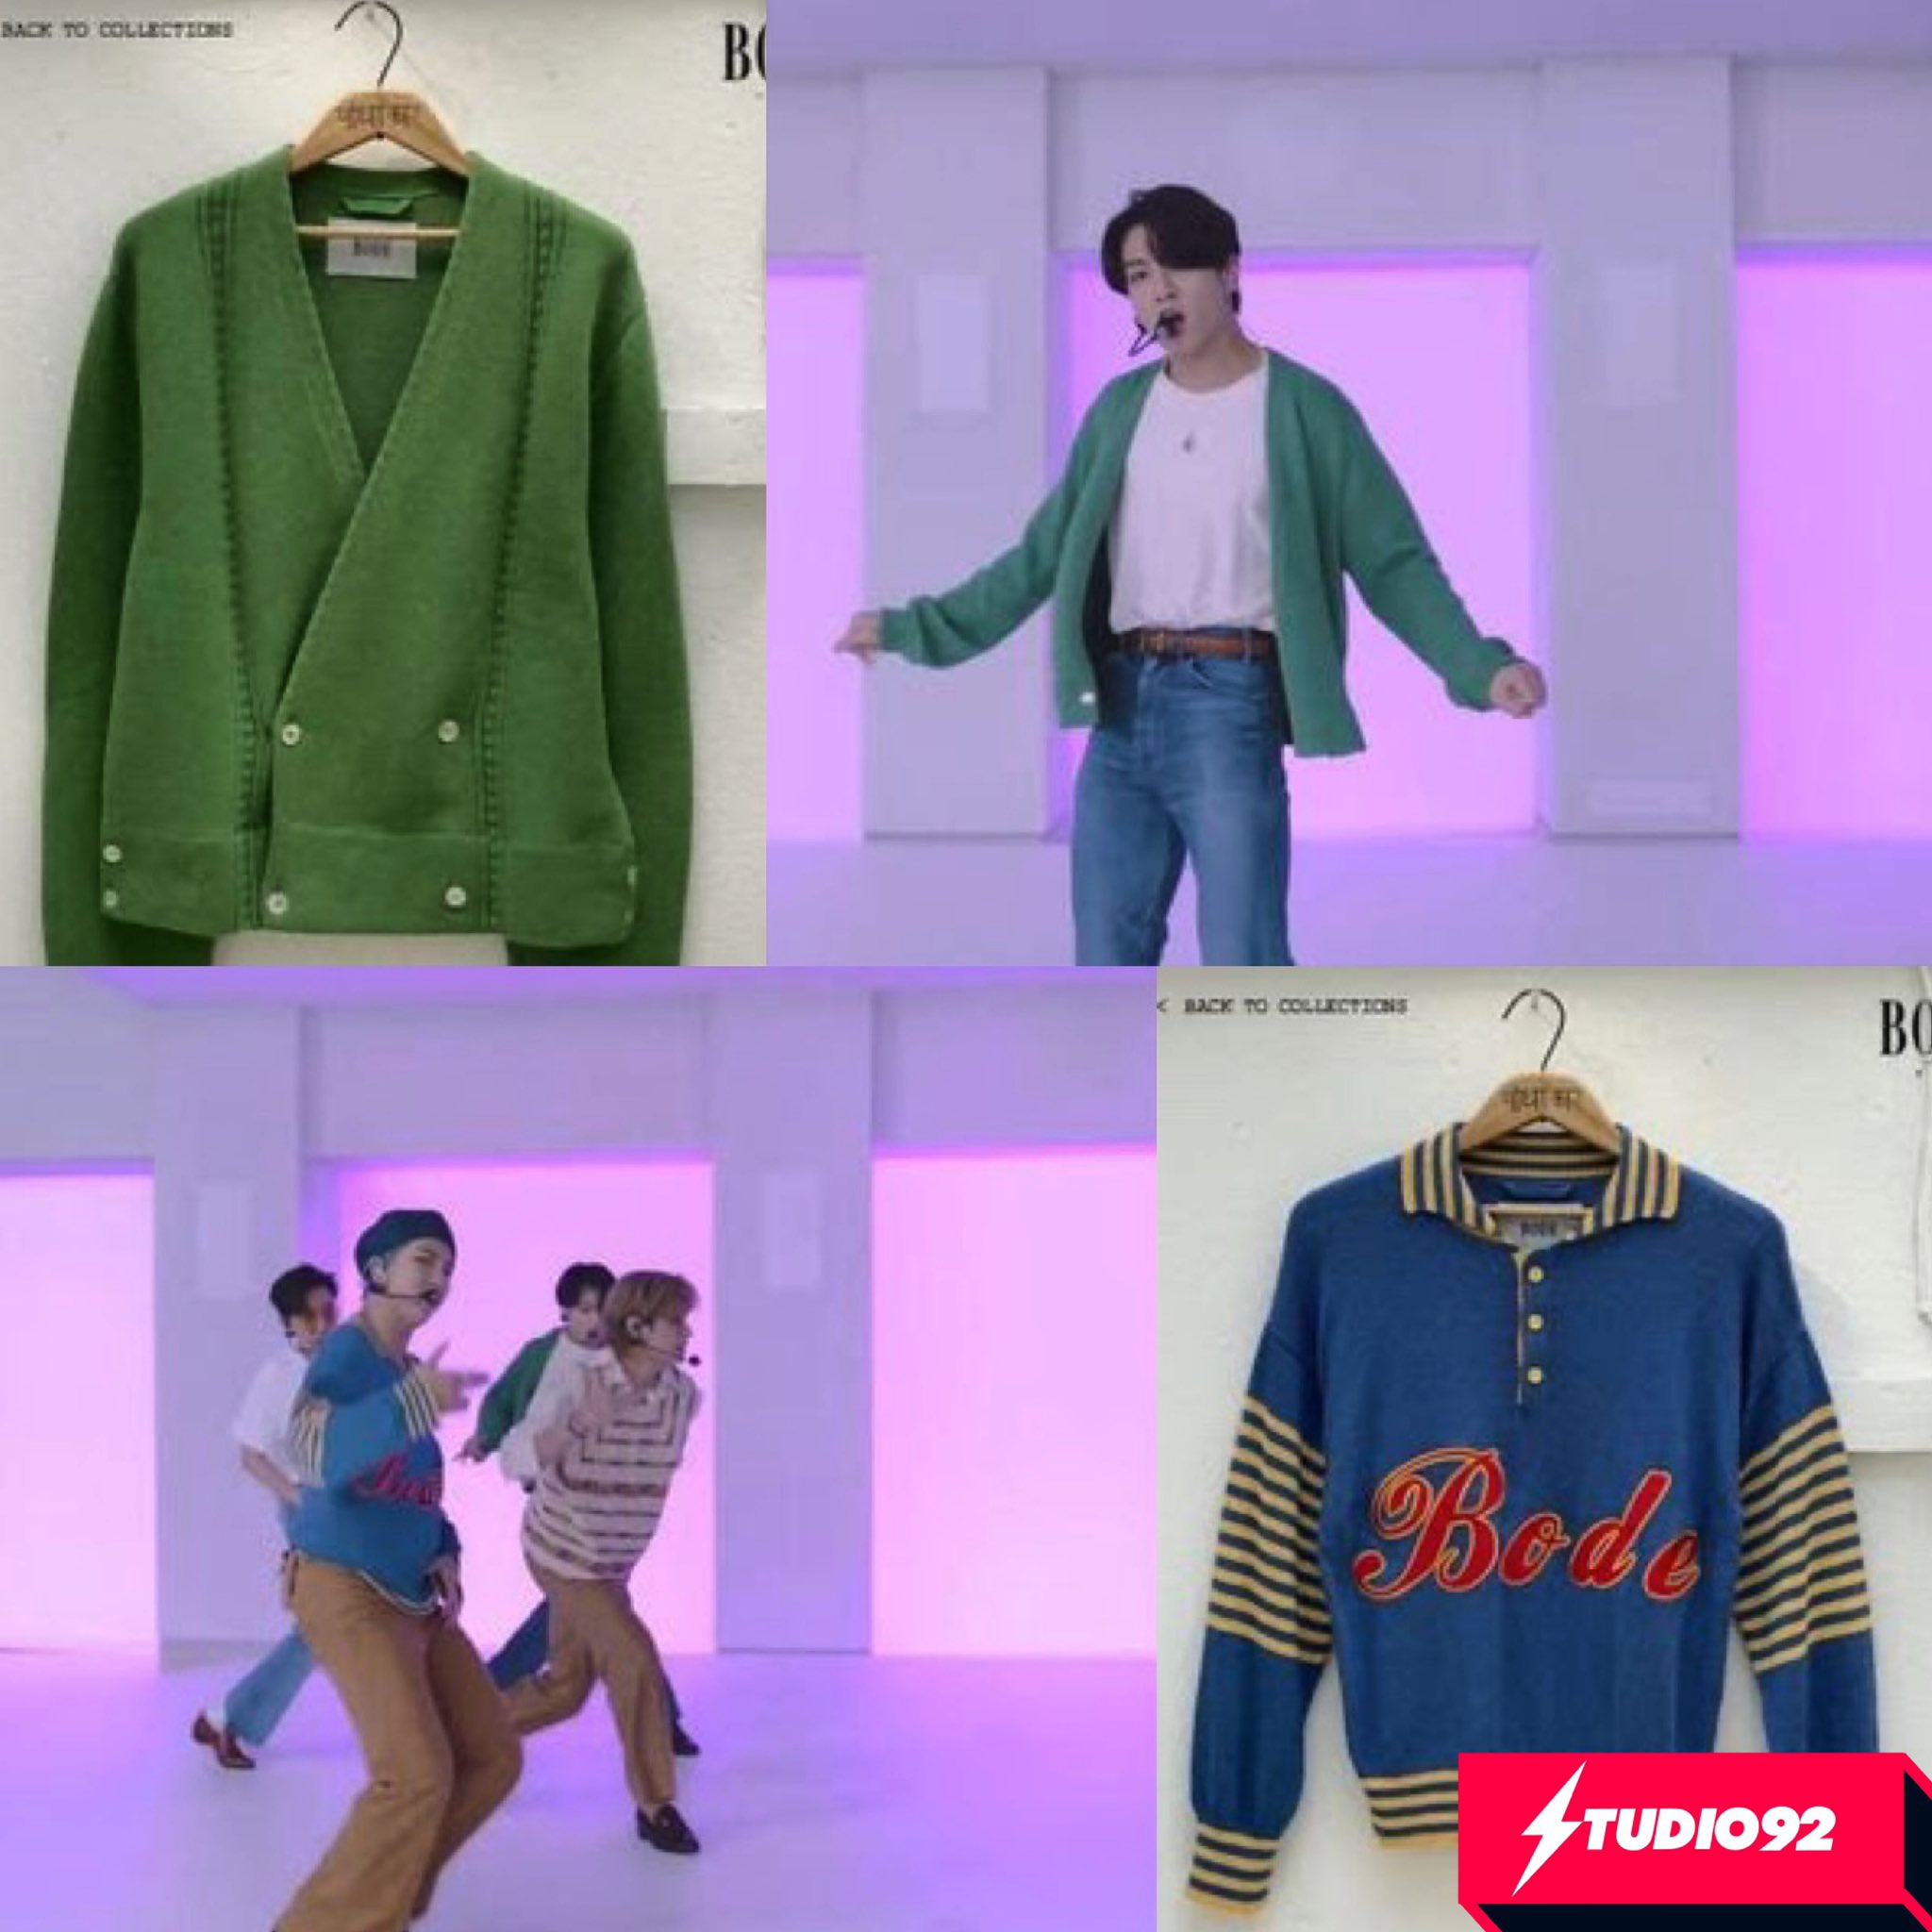 petróleo crudo Descanso morir Studio92 on Twitter: "#BTS usa ropa hecha en Perú 🇵🇪 Las prendas de #RM y  #Jungkook se lucieron en la presentación de los GRAMMYs de su canal oficial  en #YouTube 🤩 https://t.co/NMOwDAMYaS" /